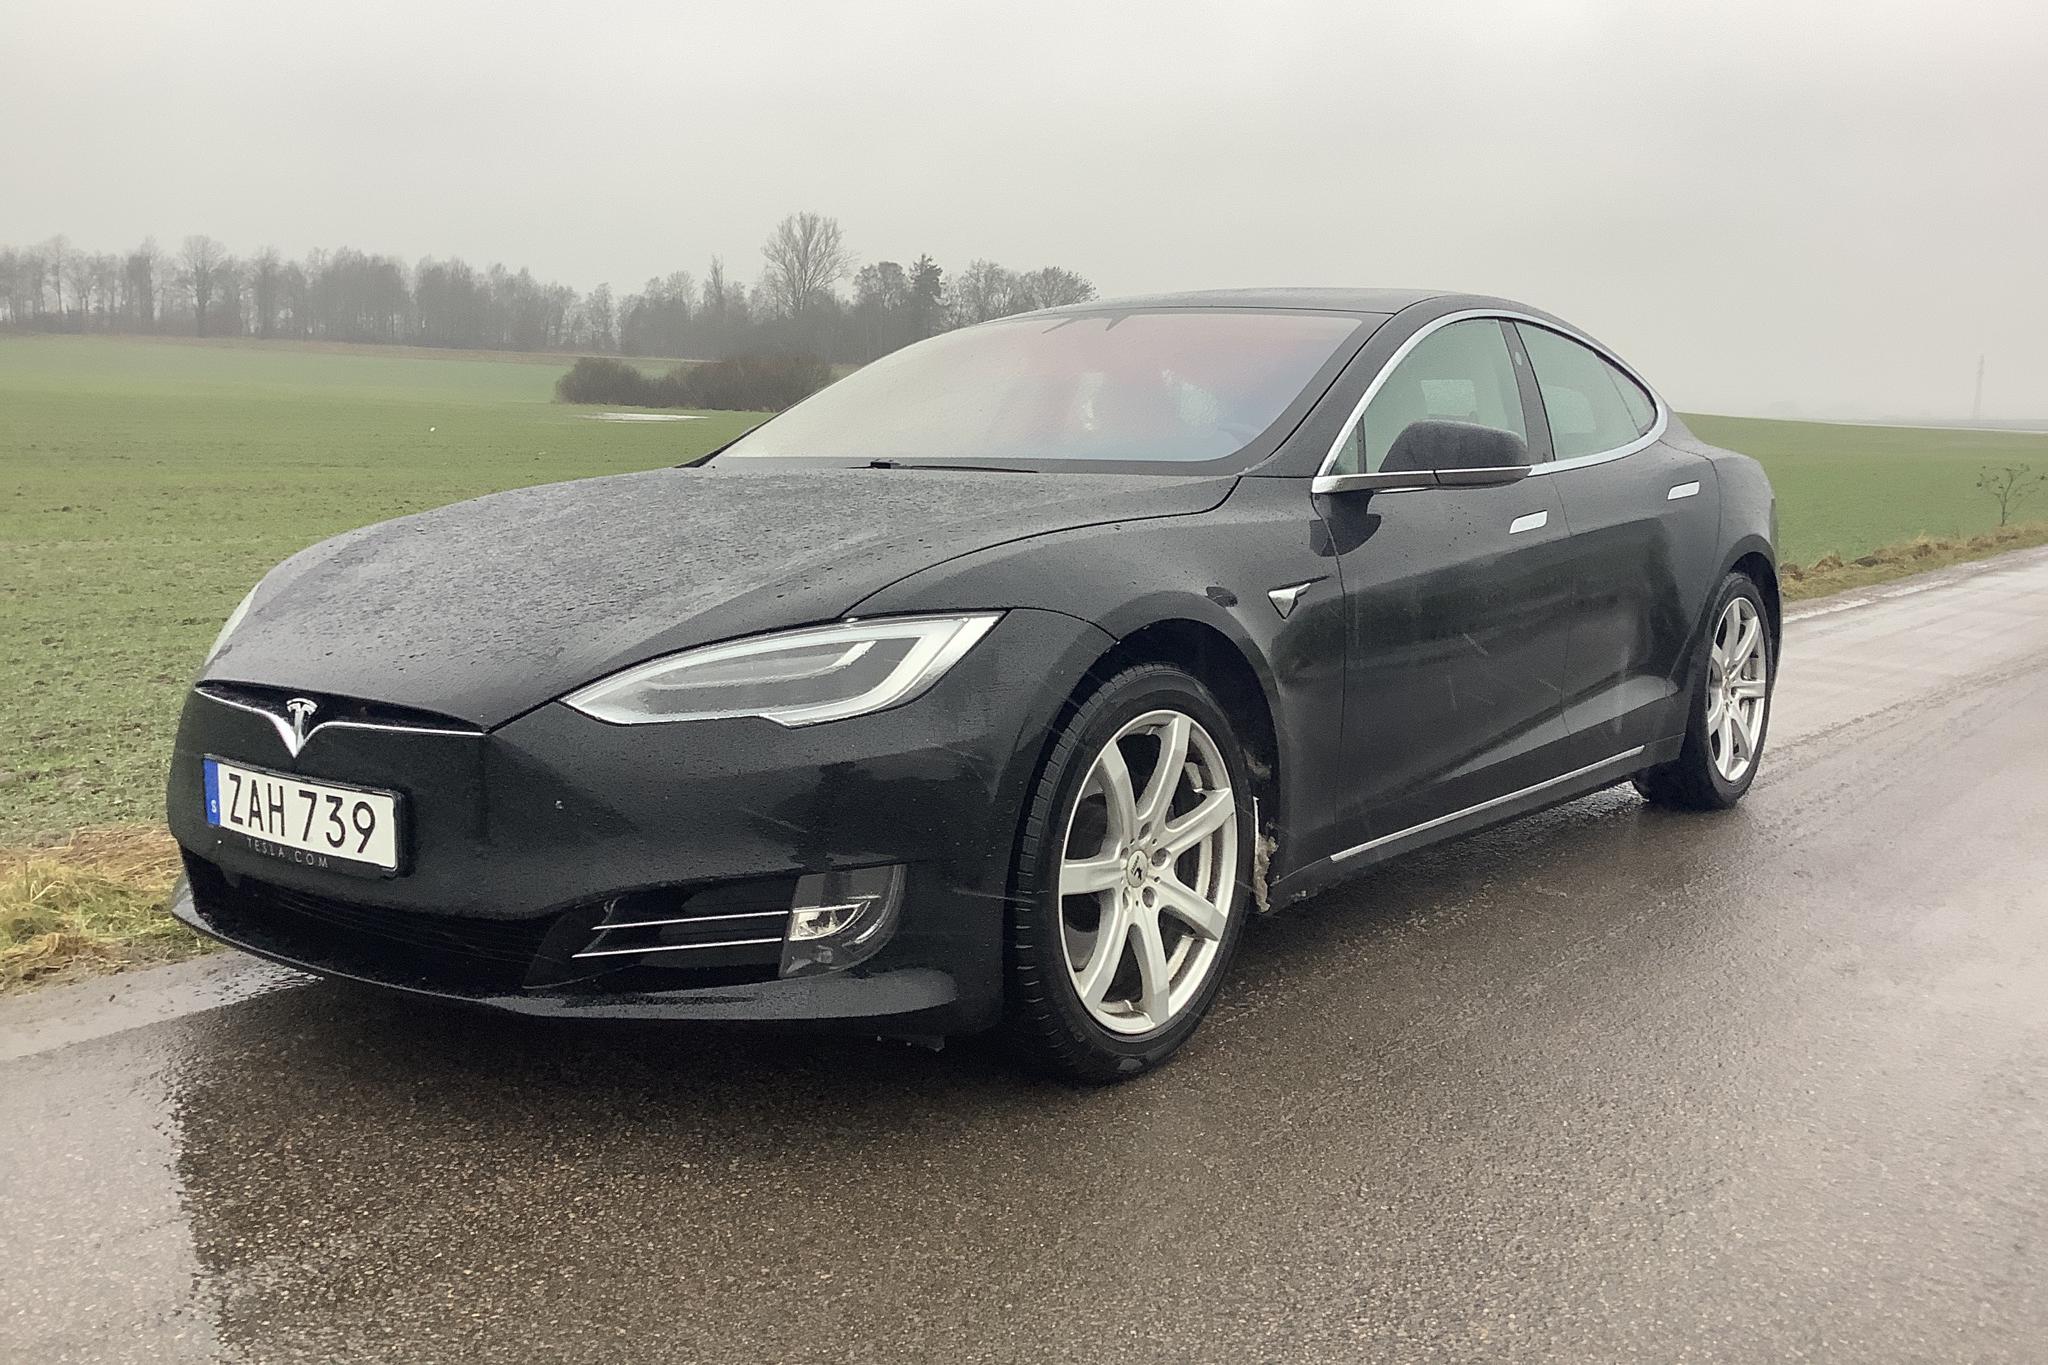 Pretentieloos Mompelen Belachelijk Used Tesla Model S 75D | 72 100 km | 525 hp (386 kW) | kvdcars.com